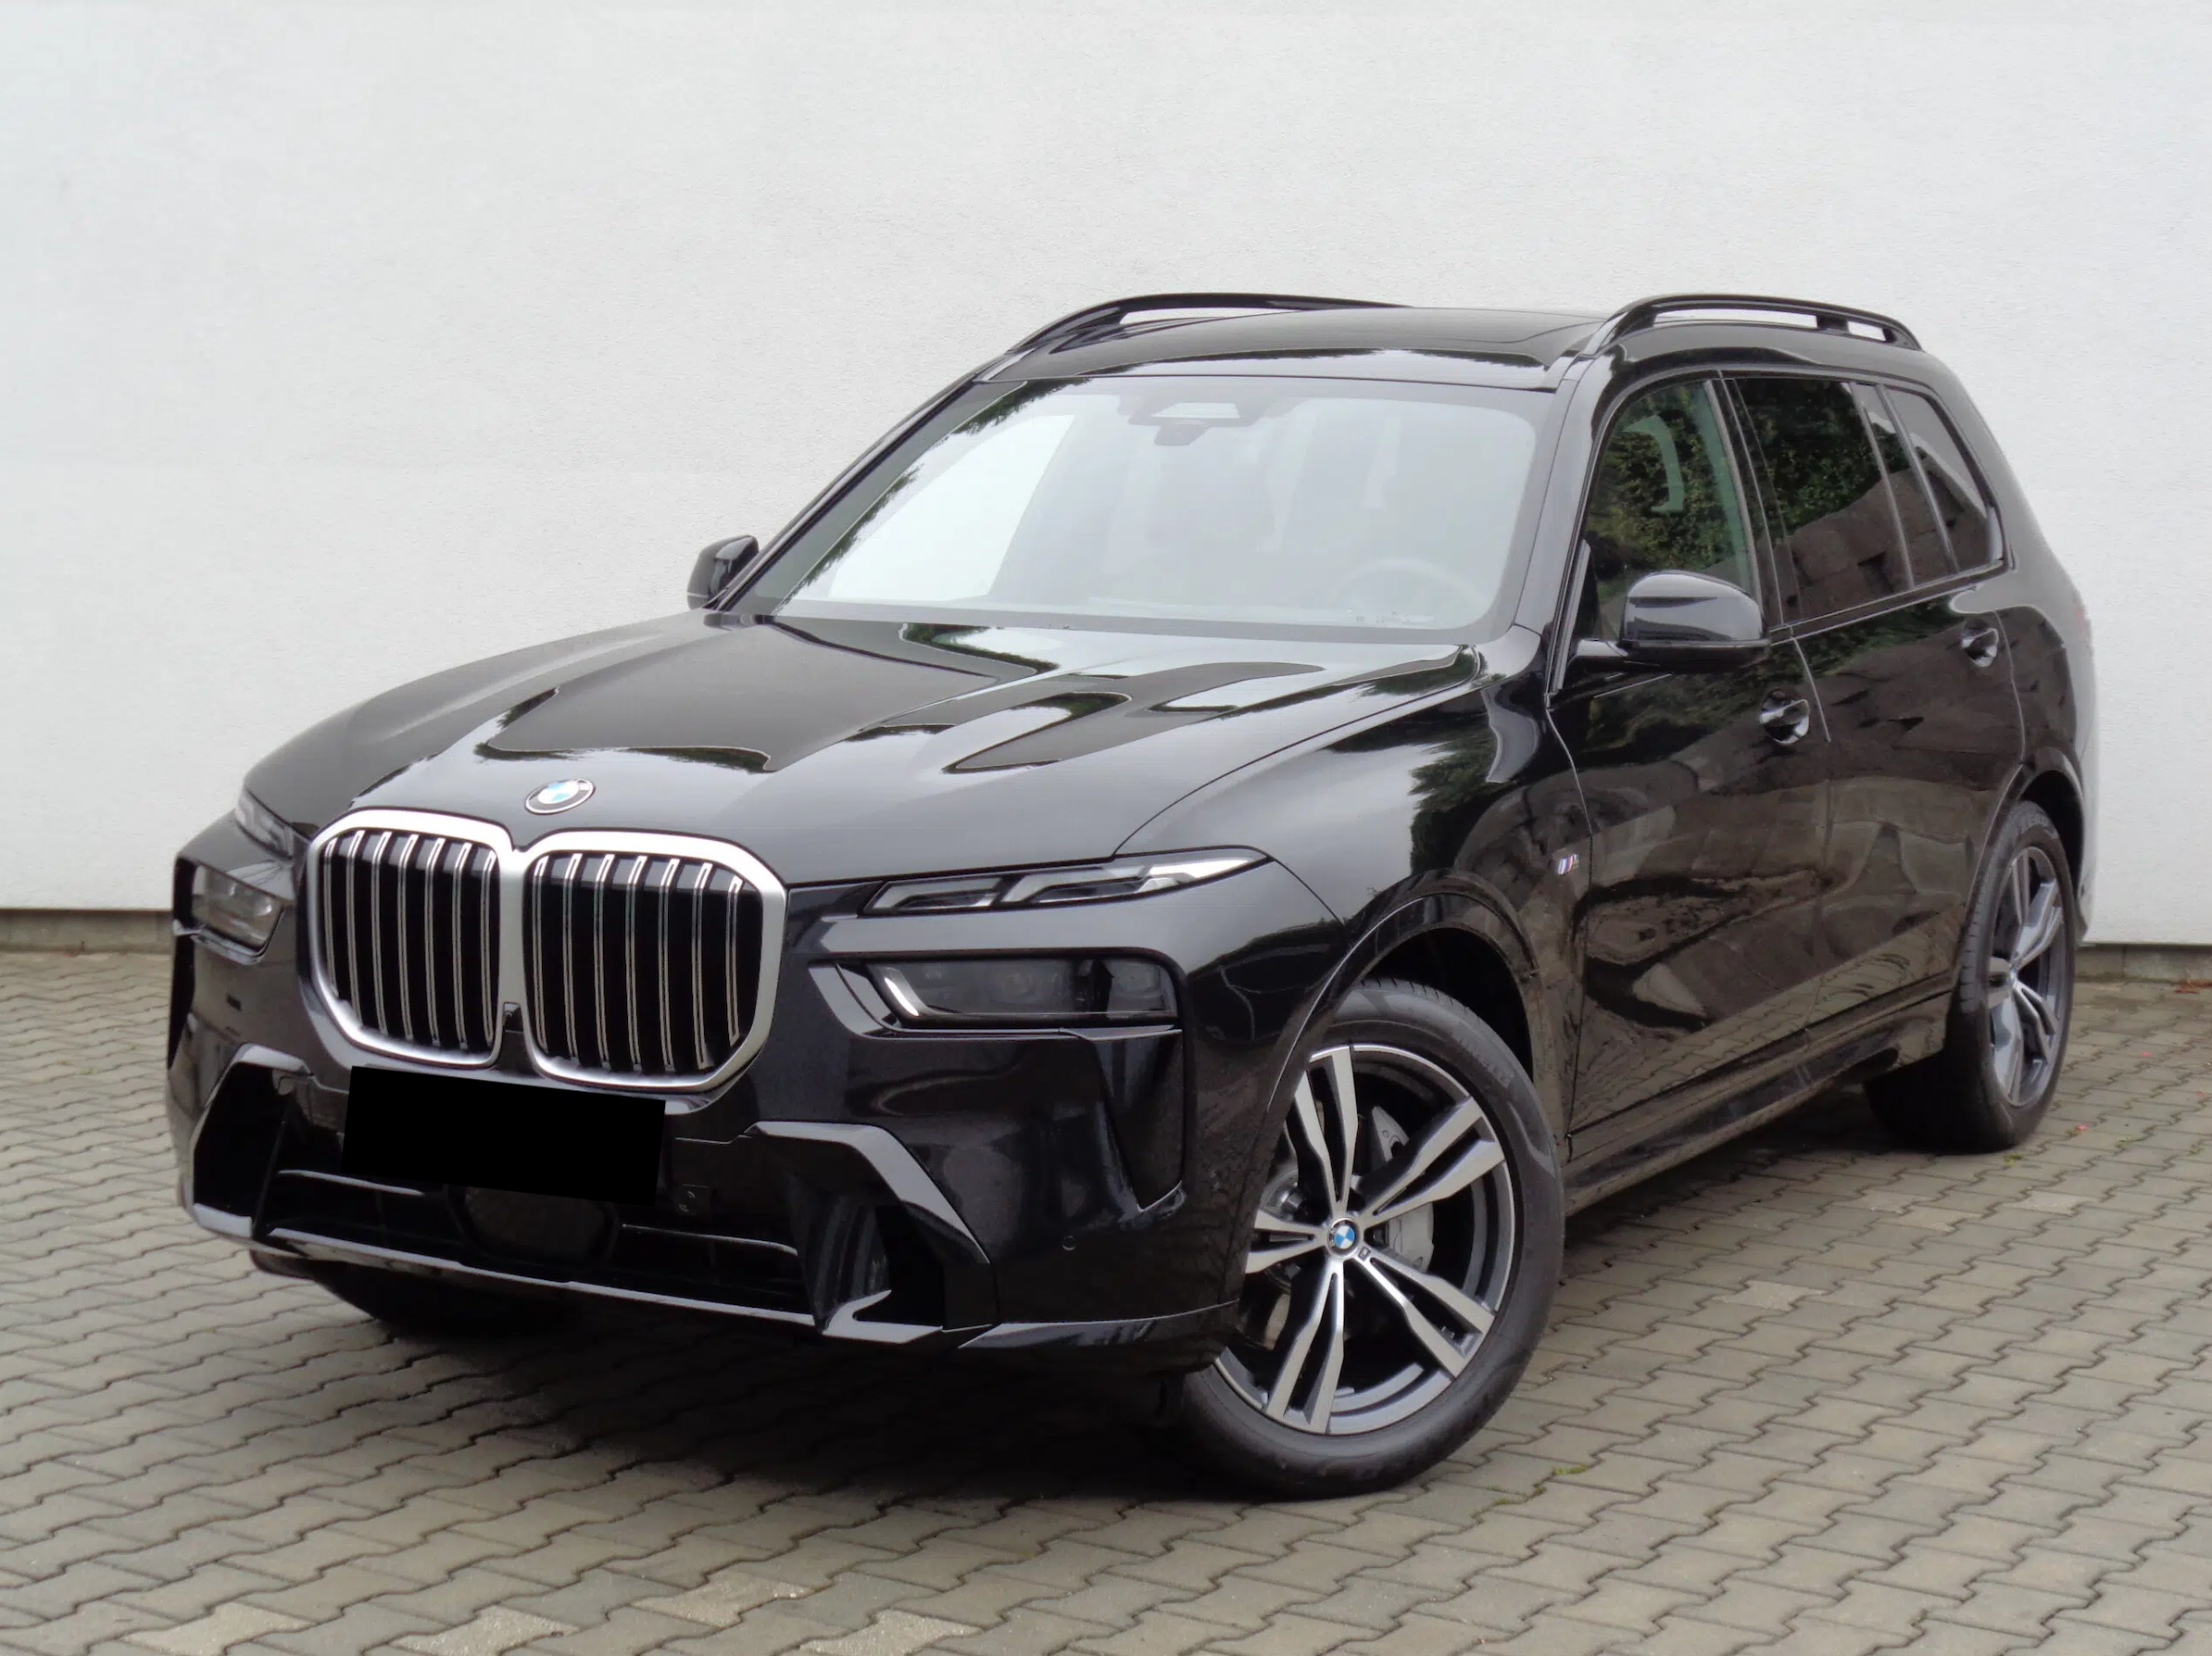 BMW X7 40d xDrive Msport | facelift | nové české auto skladem | ihned k předání | černá / hnědá kůže | skvělá výbava | super cena 2.479.000,- Kč bez DPH | nákup online AUTOiBUY.com 